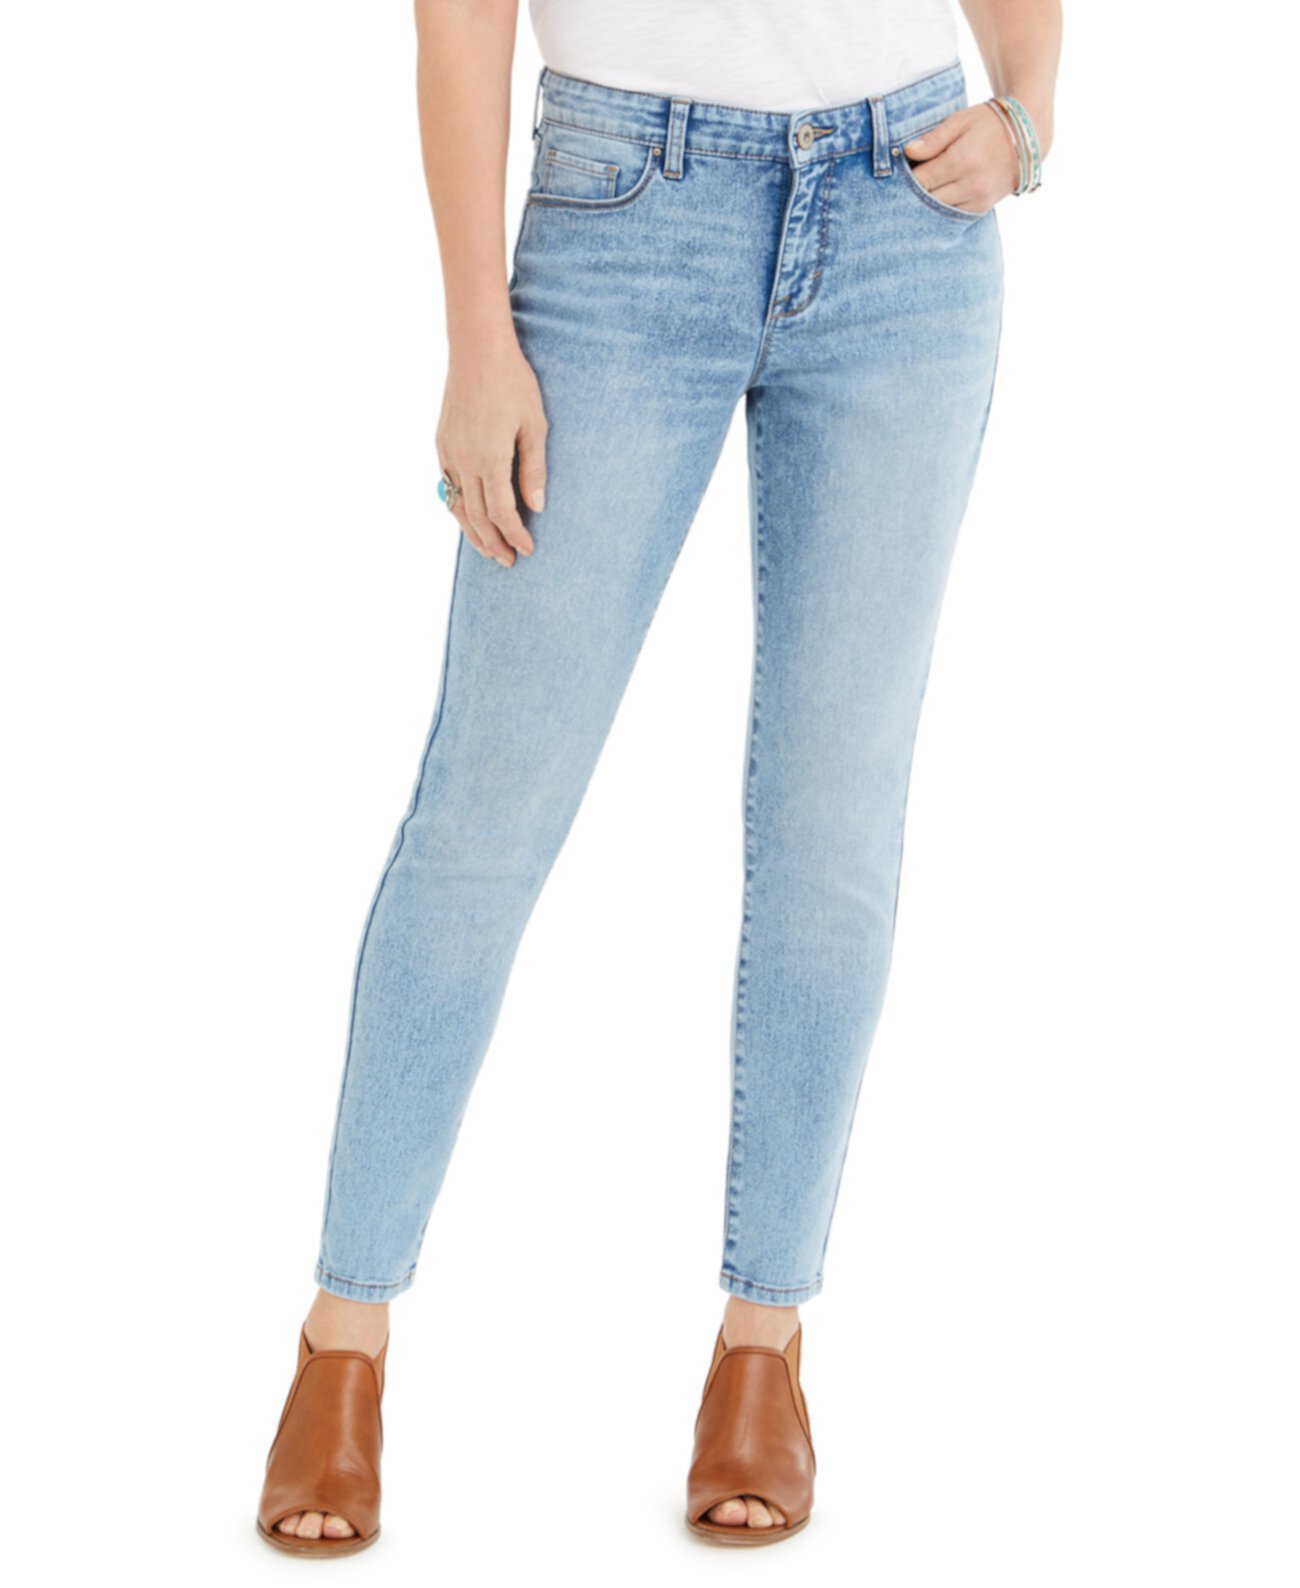 Пышные зауженные джинсы-скинни Tummy-Control, созданные для Macy's Style & Co